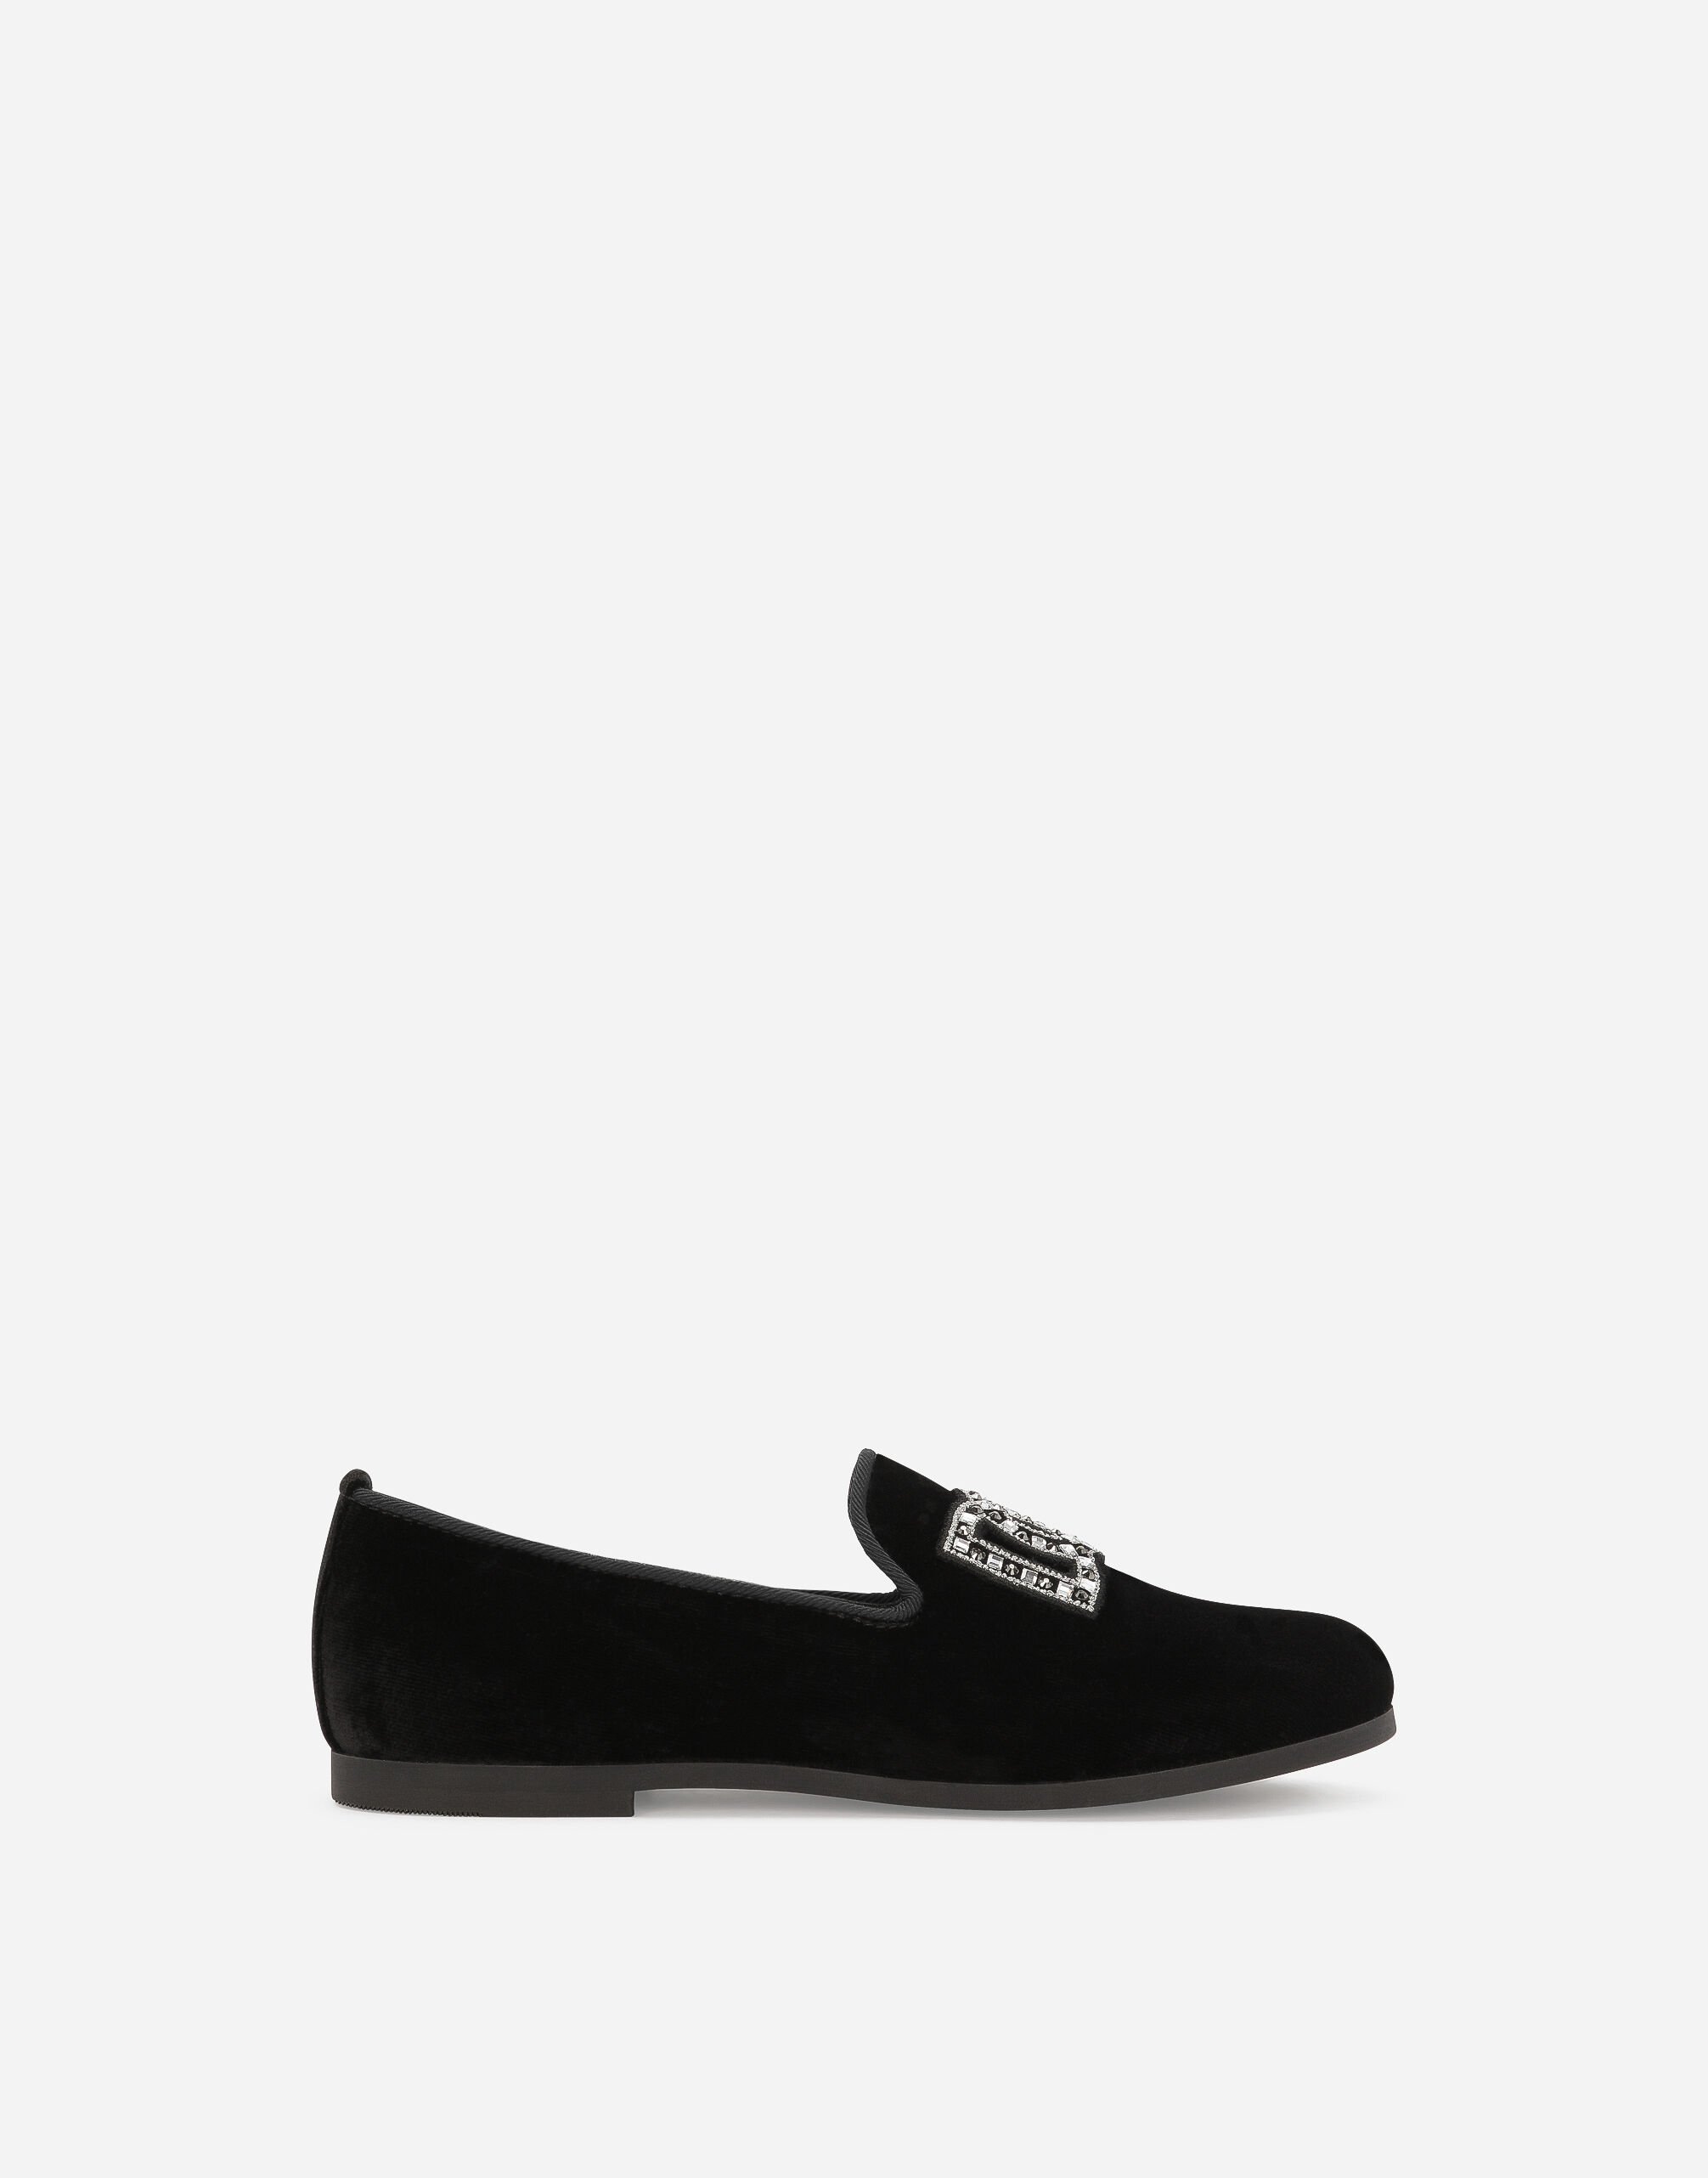 Dolce & Gabbana Slipper de terciopelo Negro EB0003AB000